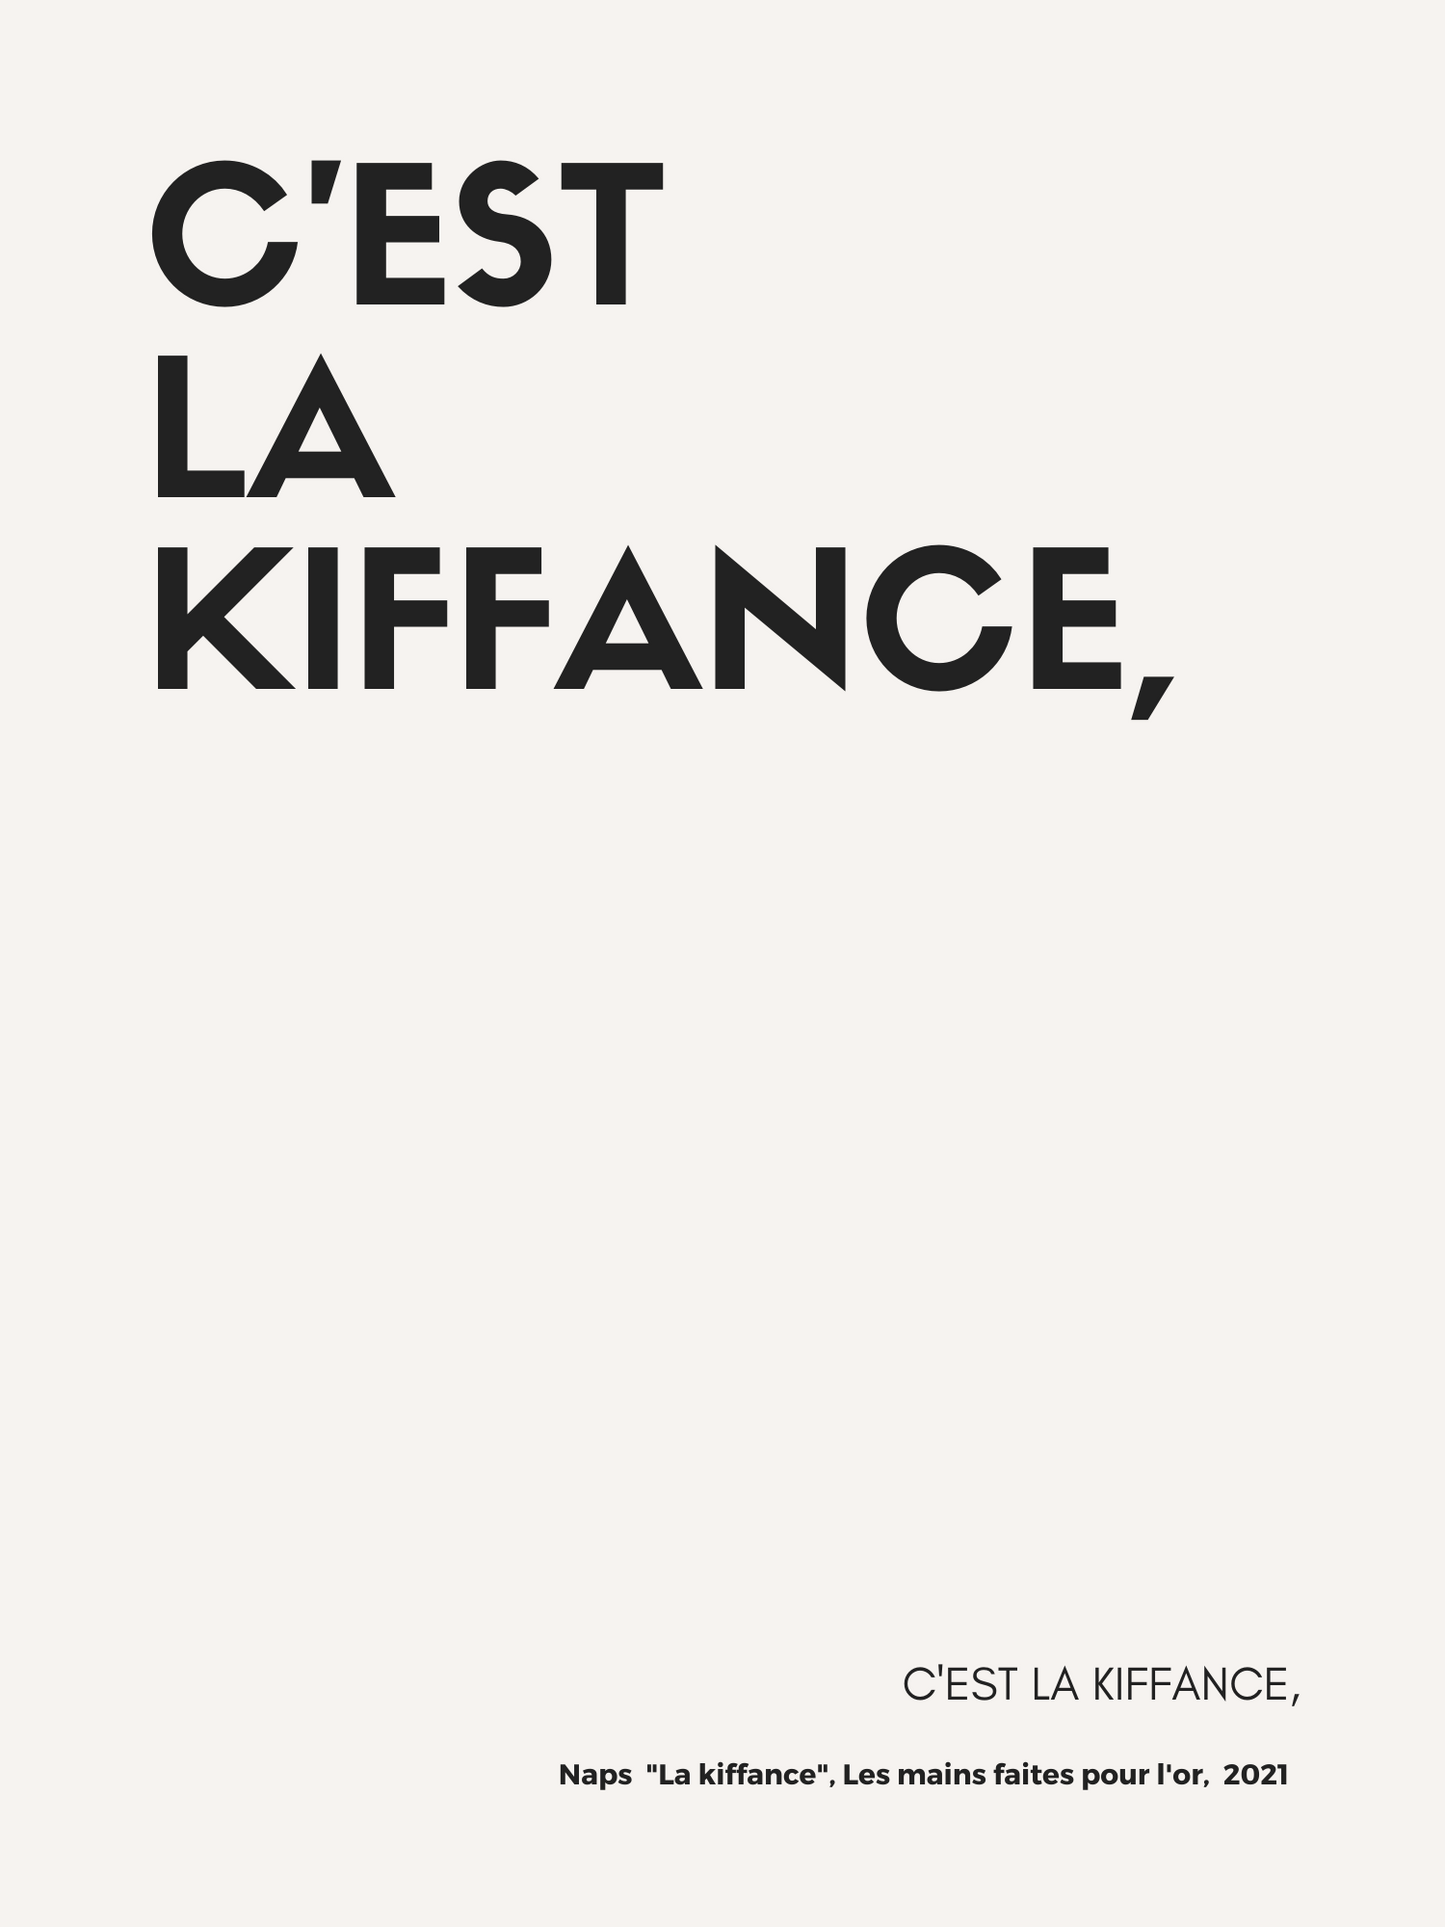 Affiche "C'est la kiffance" inspirée par Naps